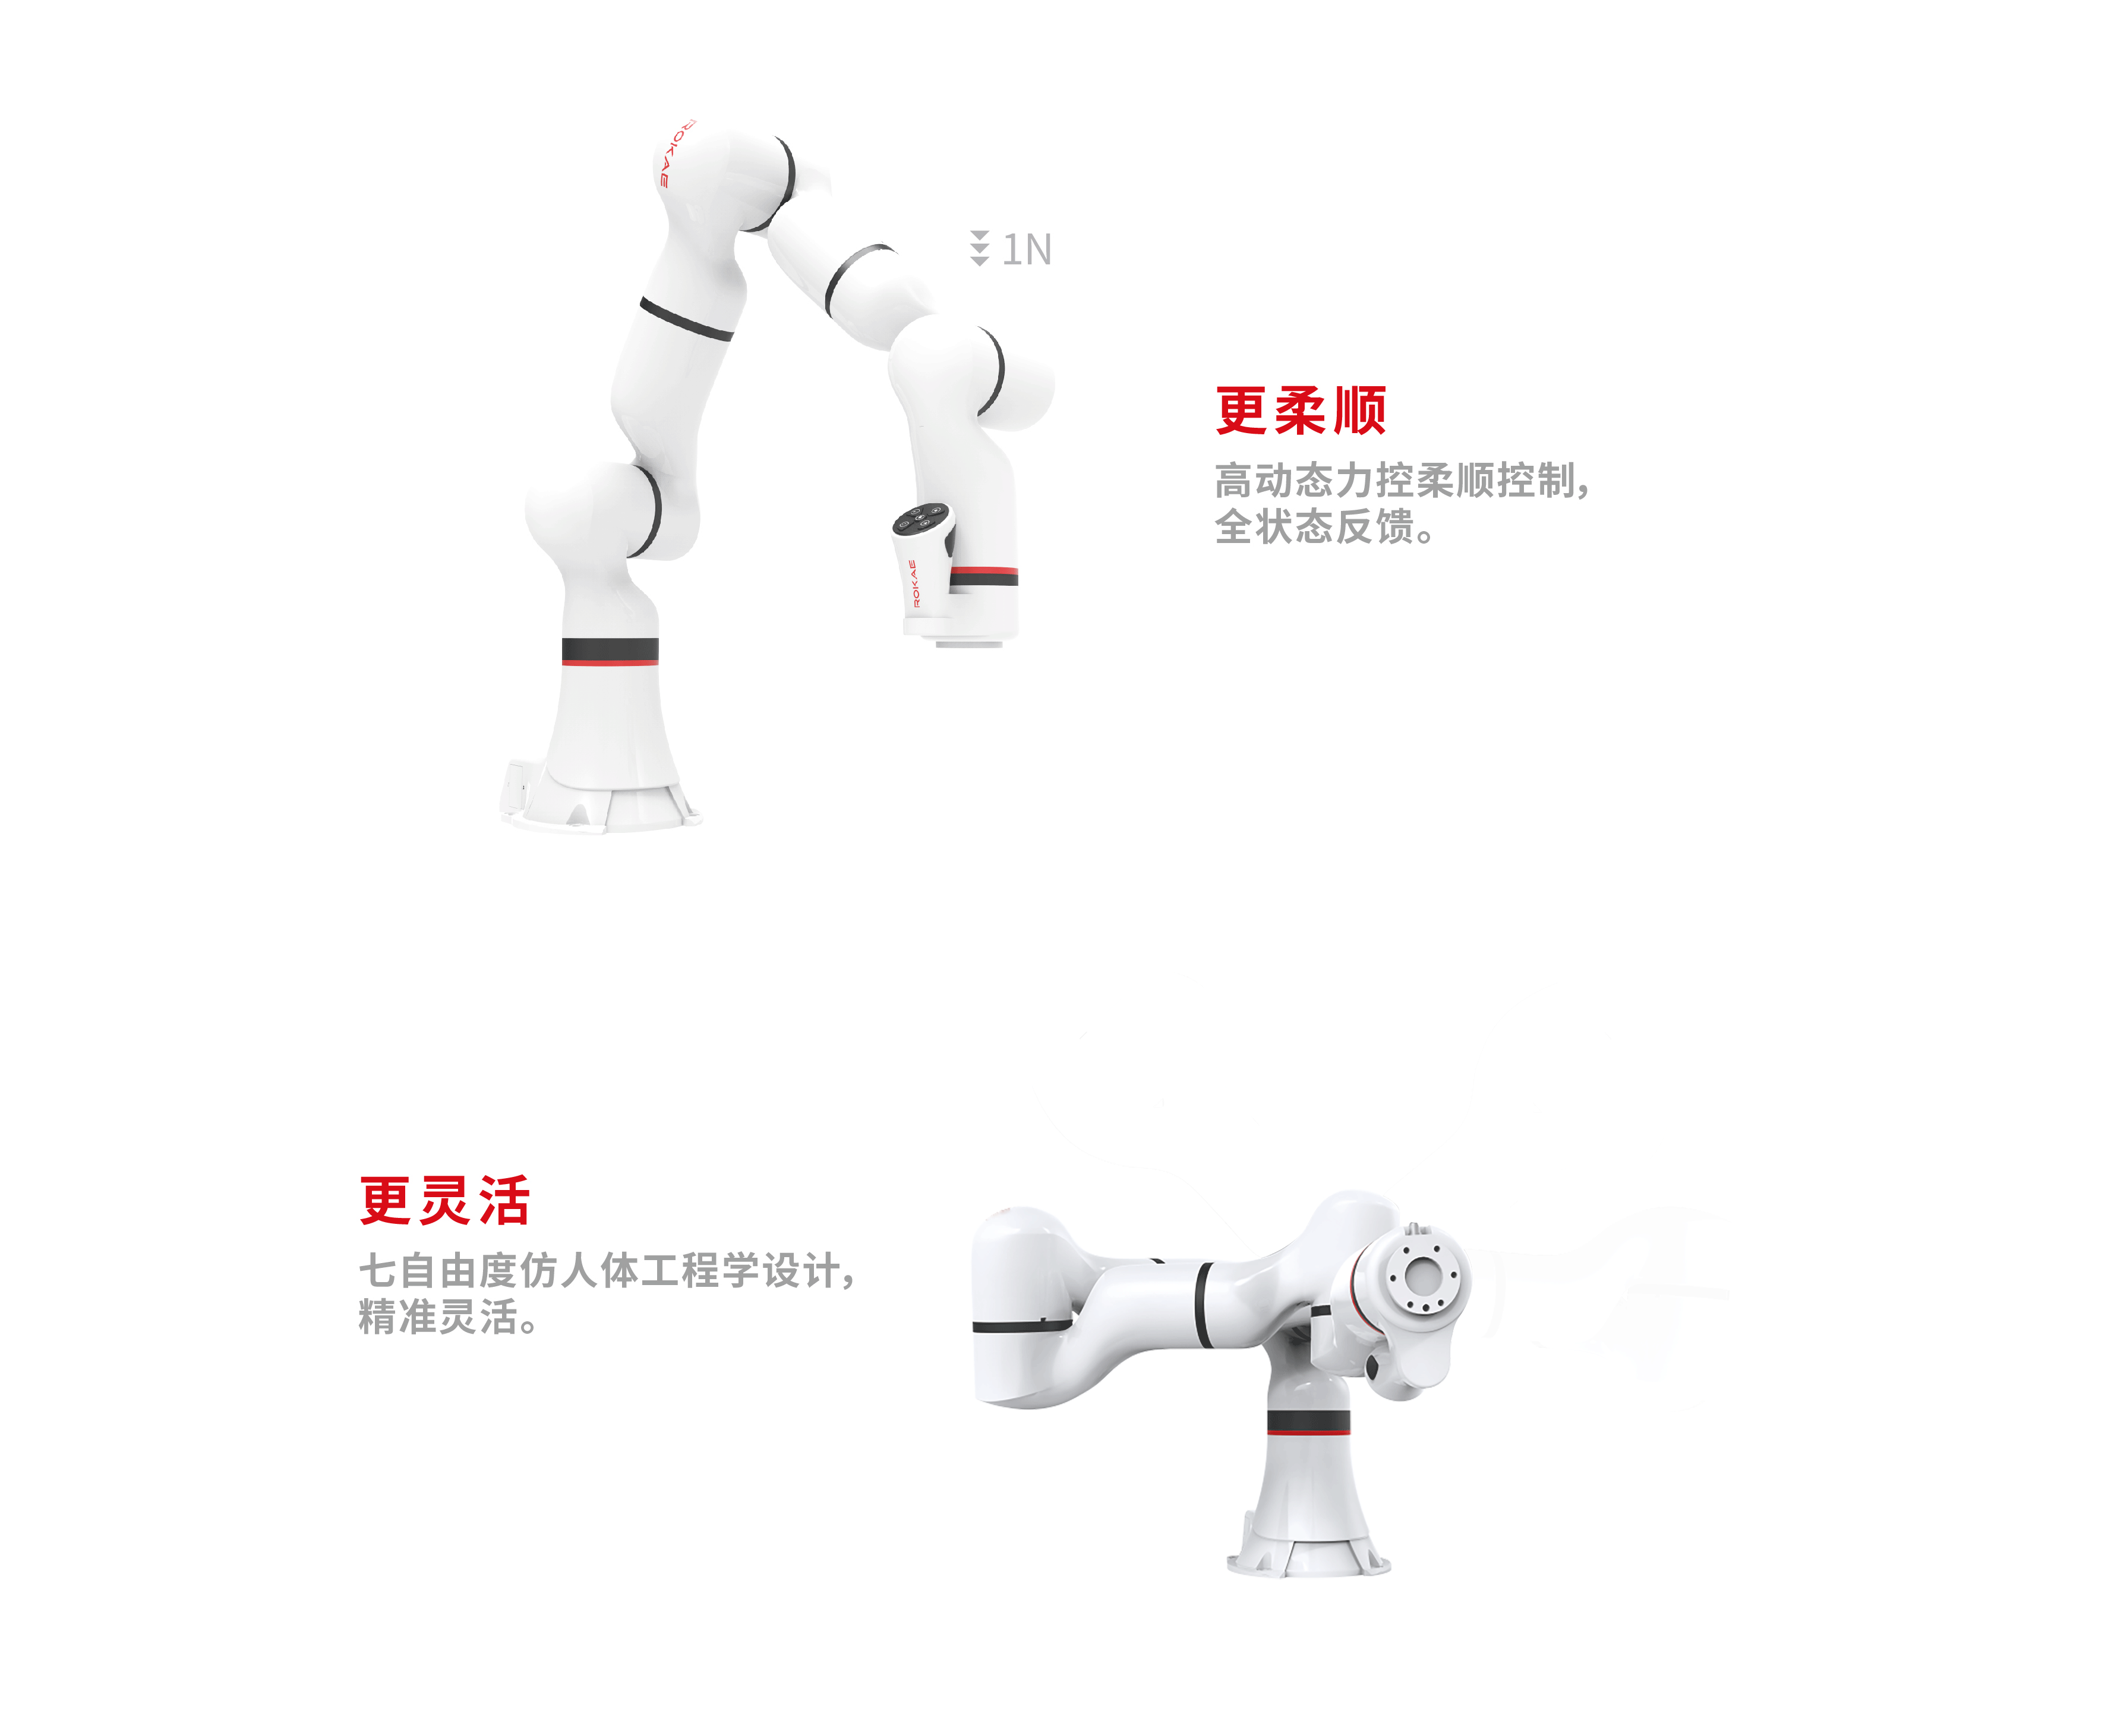 2021红点产品设计大奖，xMate，机器人，柔性协作机器人，医疗，工业设计，产品设计，